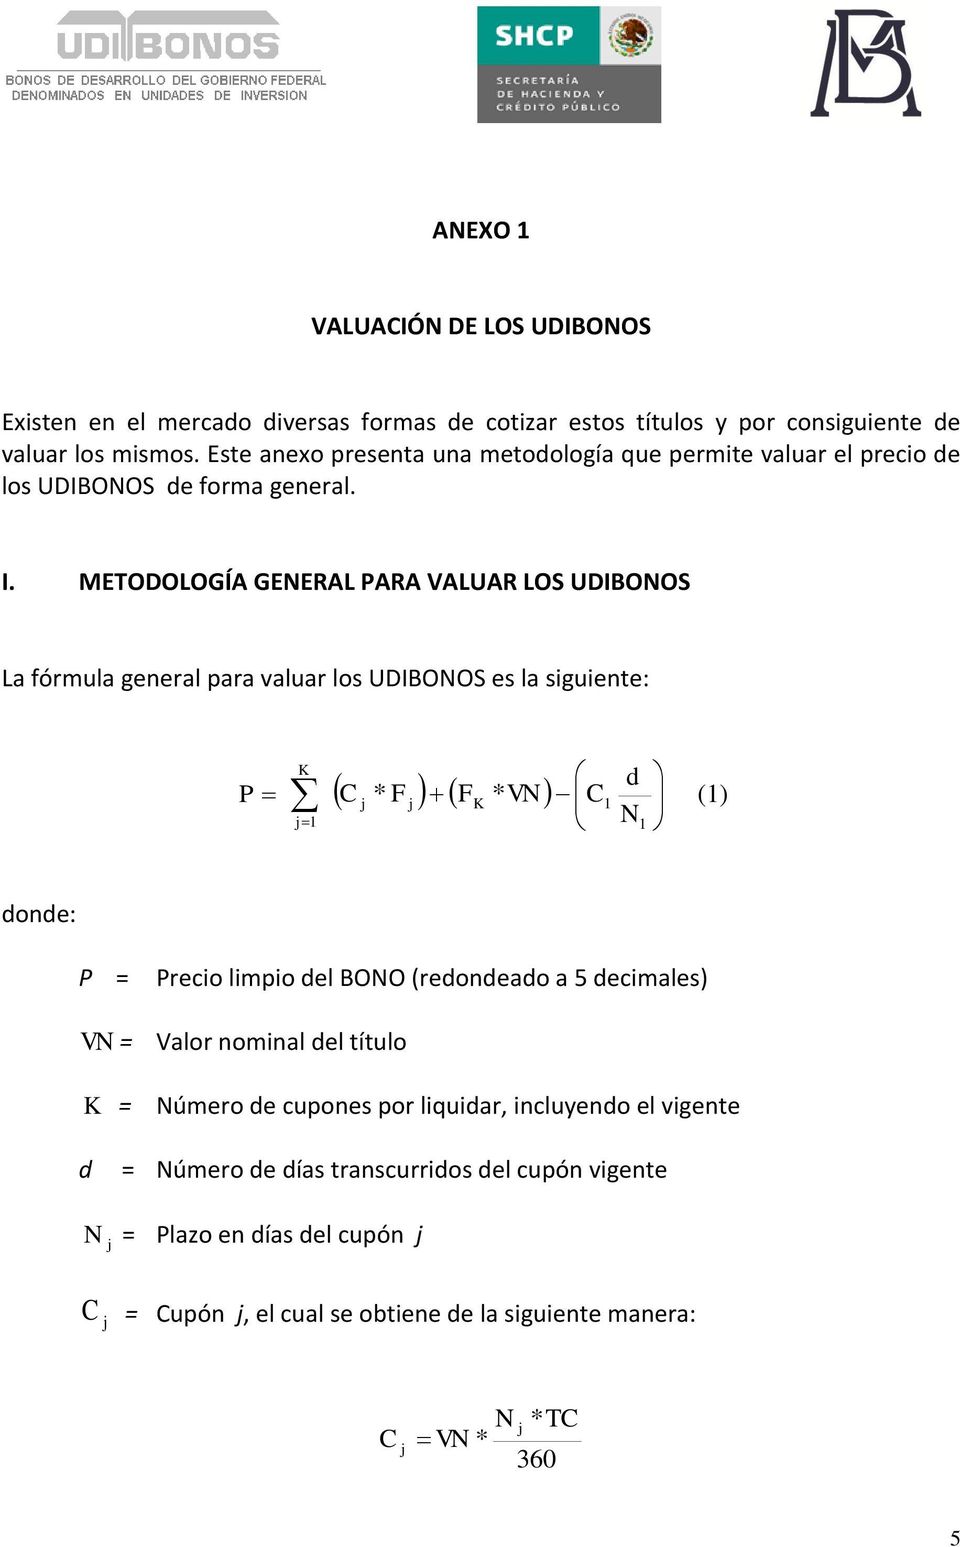 METODOLOGÍA GENERAL PARA VALUAR LOS UDIBONOS La fórmula general para valuar los UDIBONOS es la siguiente: K P d C * F FK * VN C N () donde: P = Precio limpio del BONO